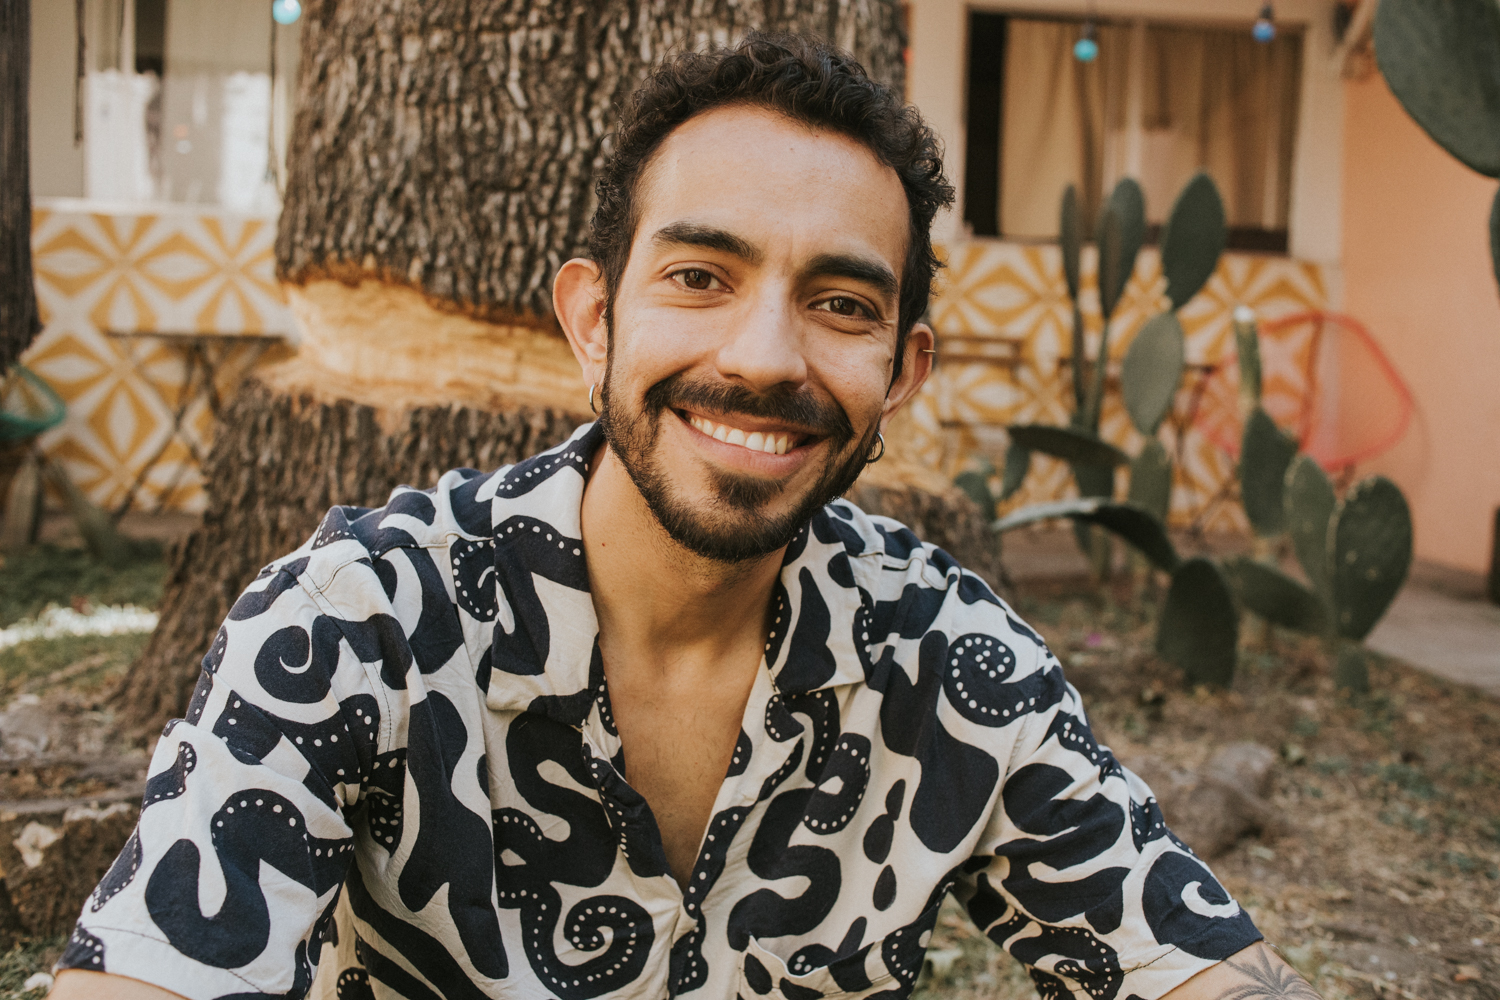 Stefano, anfitrion de Airbnb con camisa de estampado blanco con negro, sonriendo, al fondo algunas plantas y el tronco de un arbol